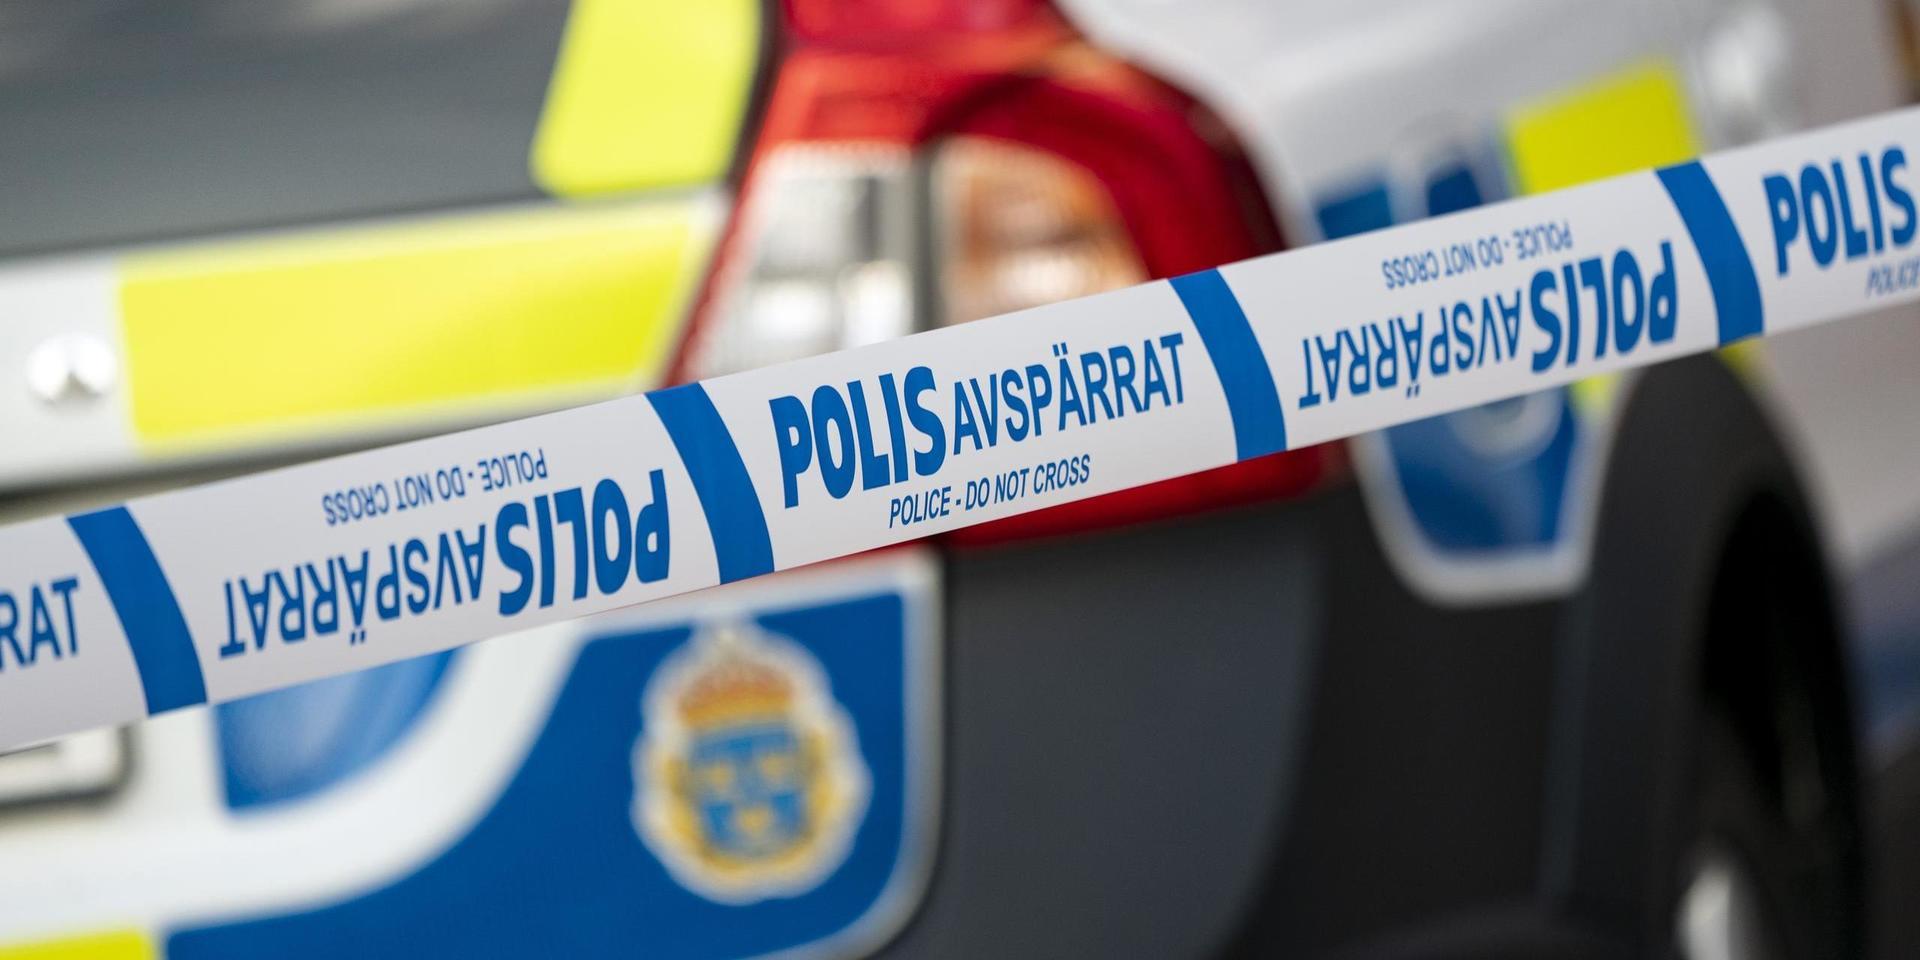 Tolv inbrott har inträffat i Skummeslövsstrand den senaste tiden. Polisen gjorde på måndagen en teknisk undersökning vid den senaste drabbade stugan, som används som permanentbostad.